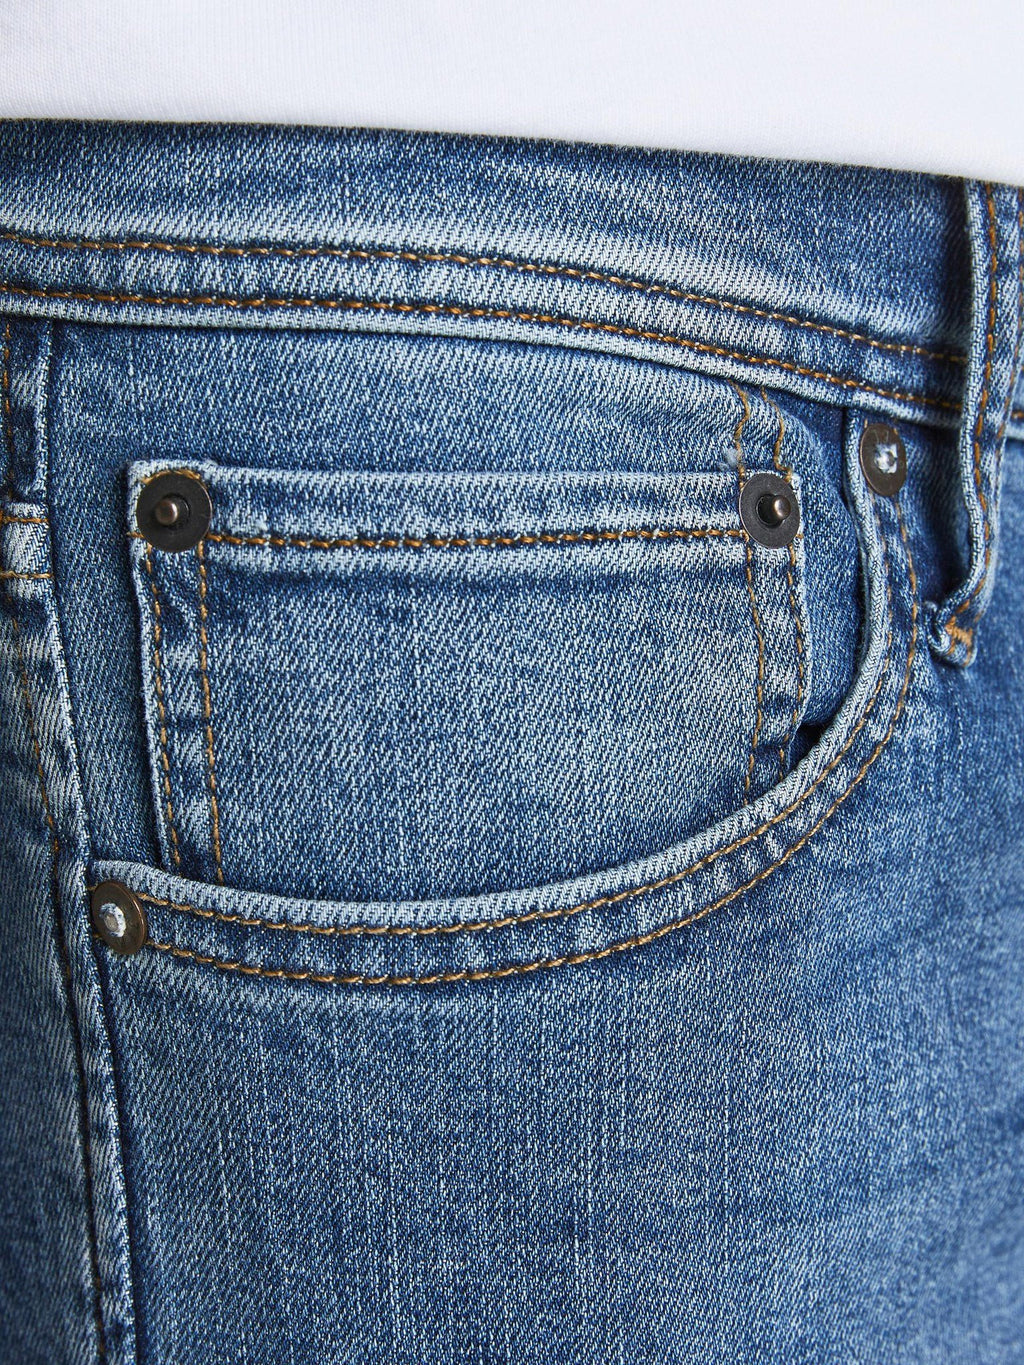 Liam Original Jeans 405 - Blue Denim